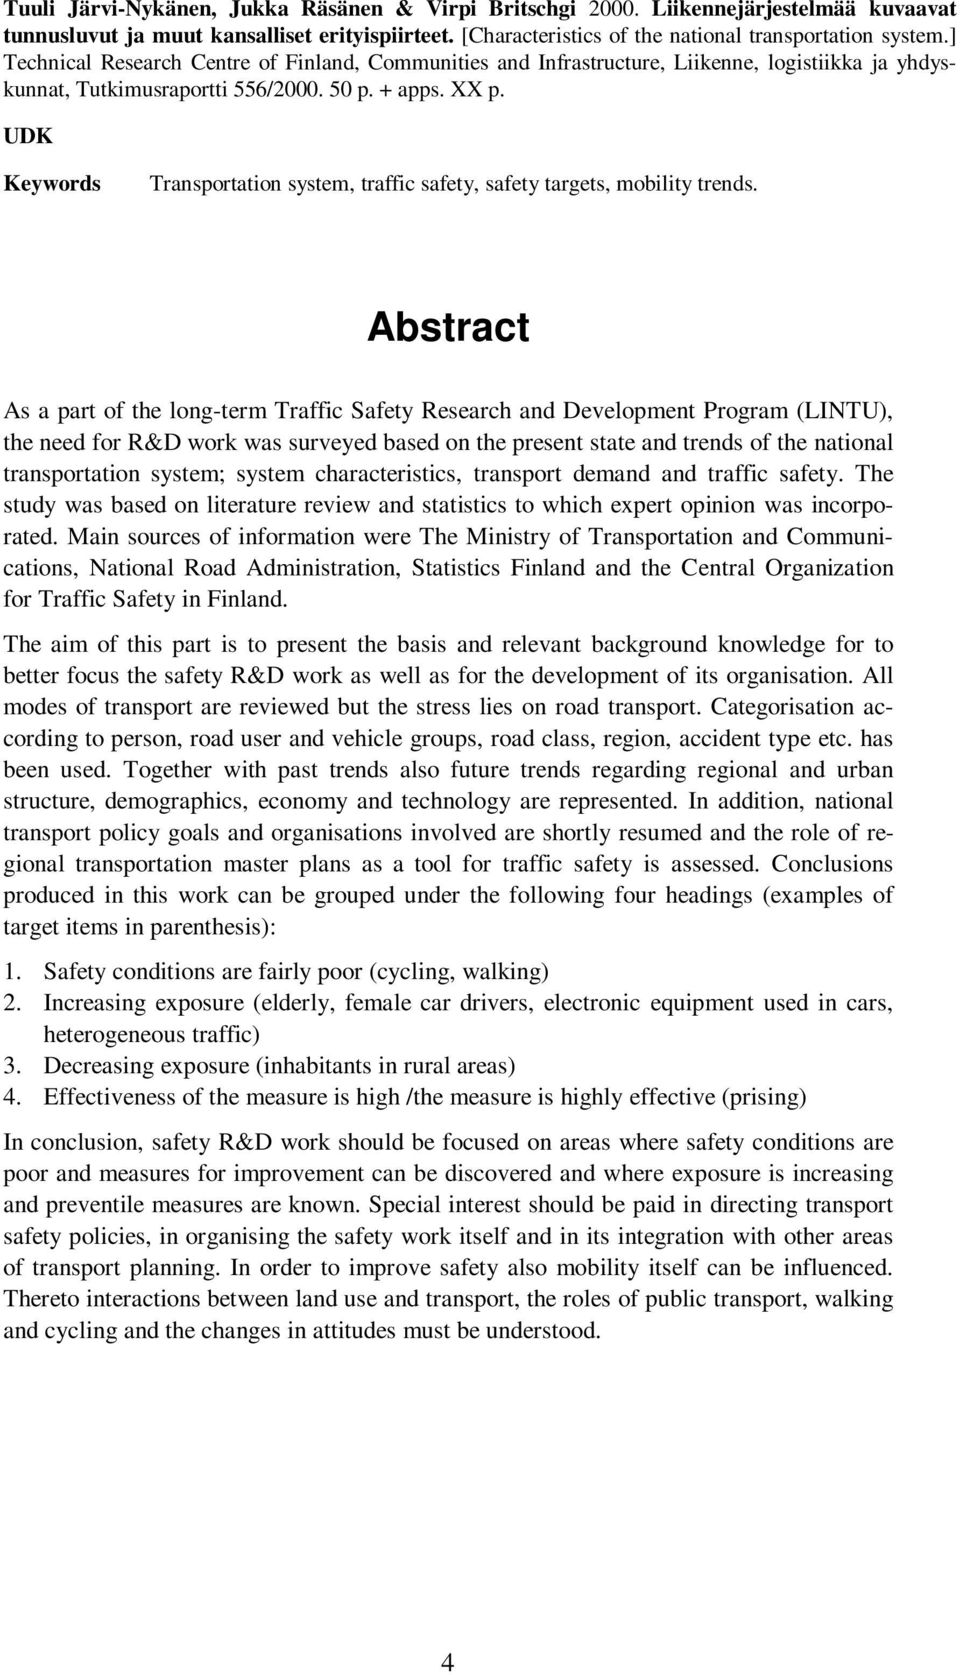 UDK Keywords Transportation system, traffic safety, safety targets, mobility trends.